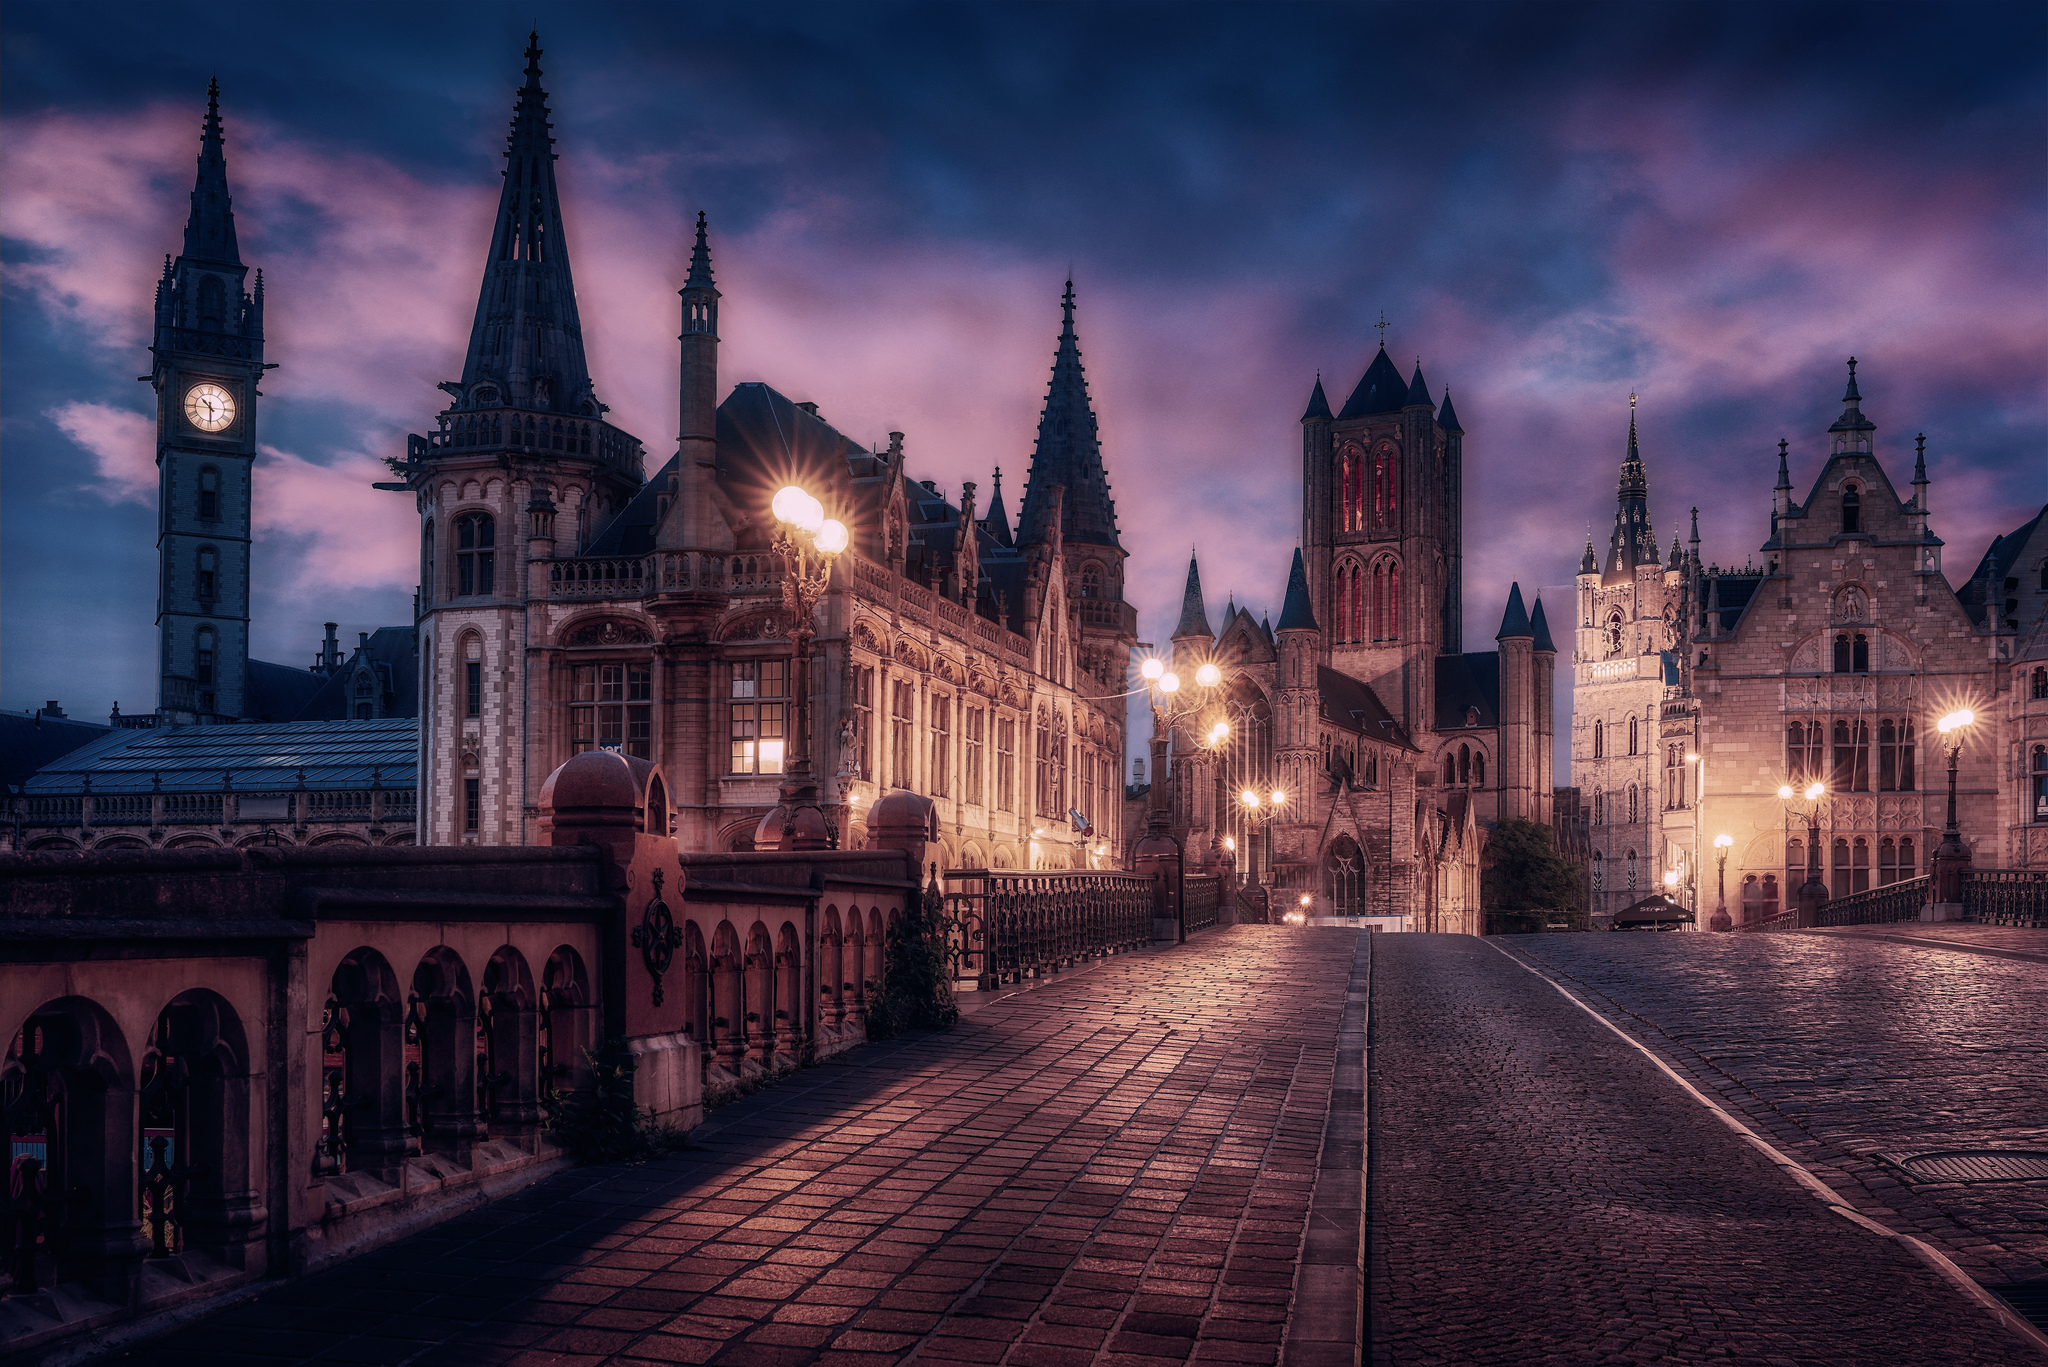 Обои ночной город город во Фландрии Бельгия - бесплатные картинки на Fonwall